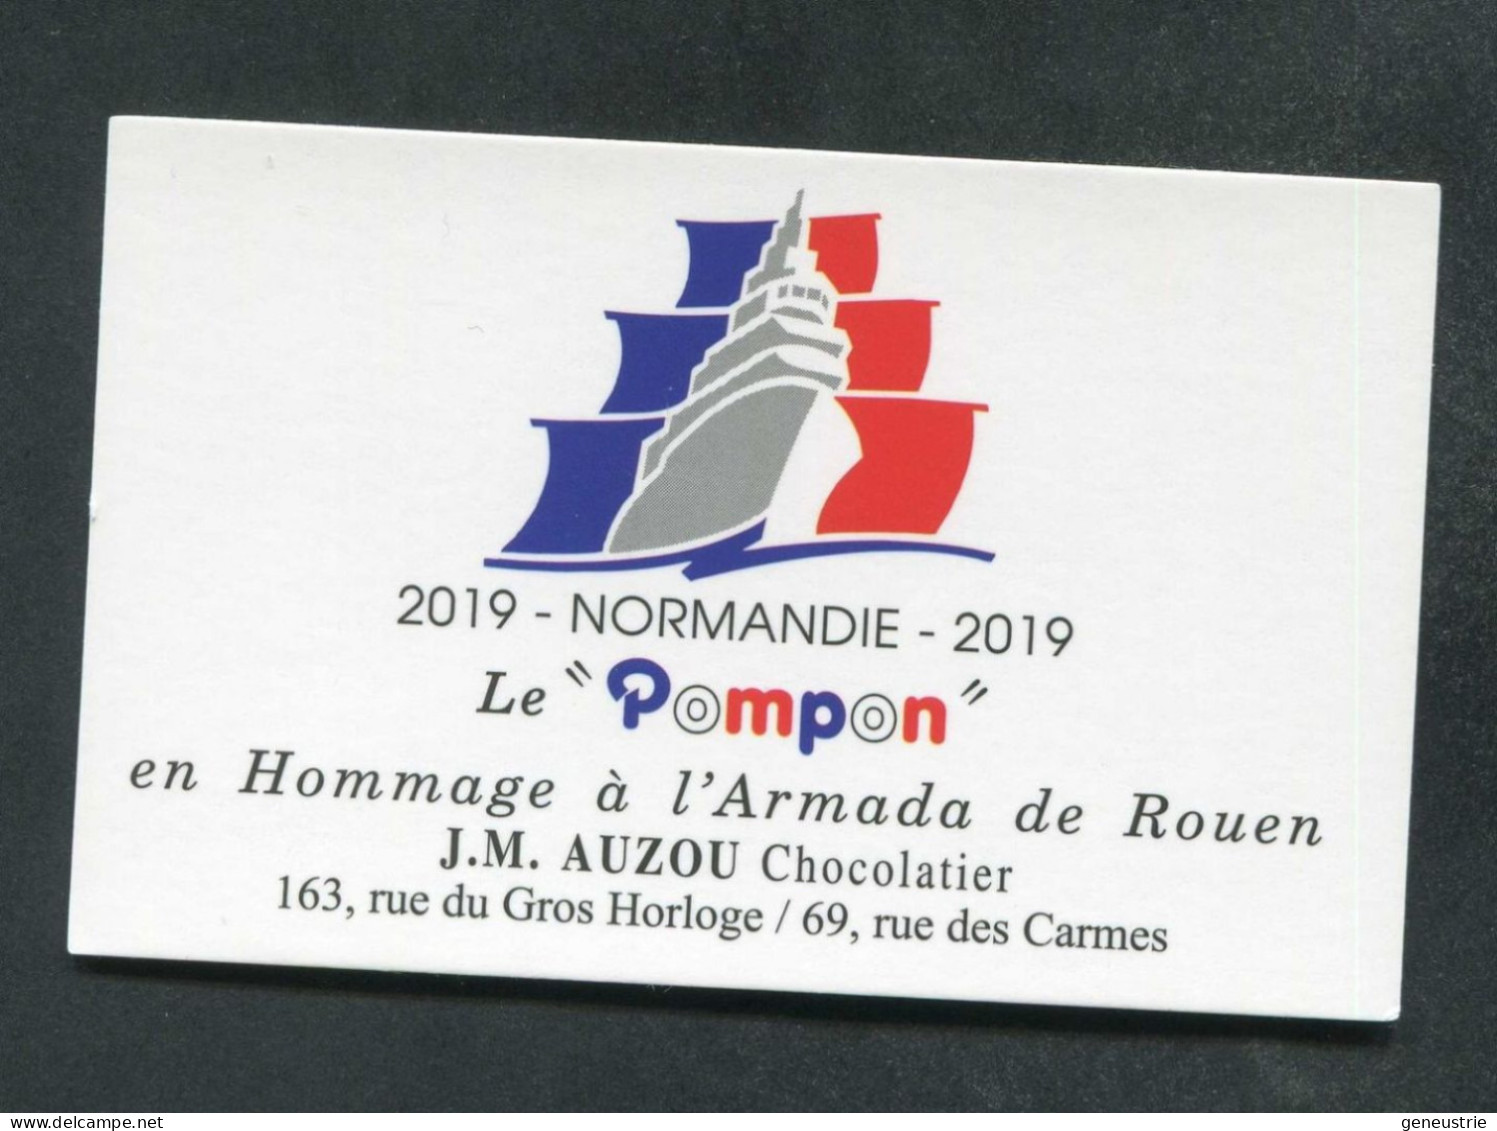 Carte De Visite "Le Pompon" En Hommage à L'Armada De Rouen - Normandie 2019 - J.M. Auzou Chocolatier - Cartoncini Da Visita